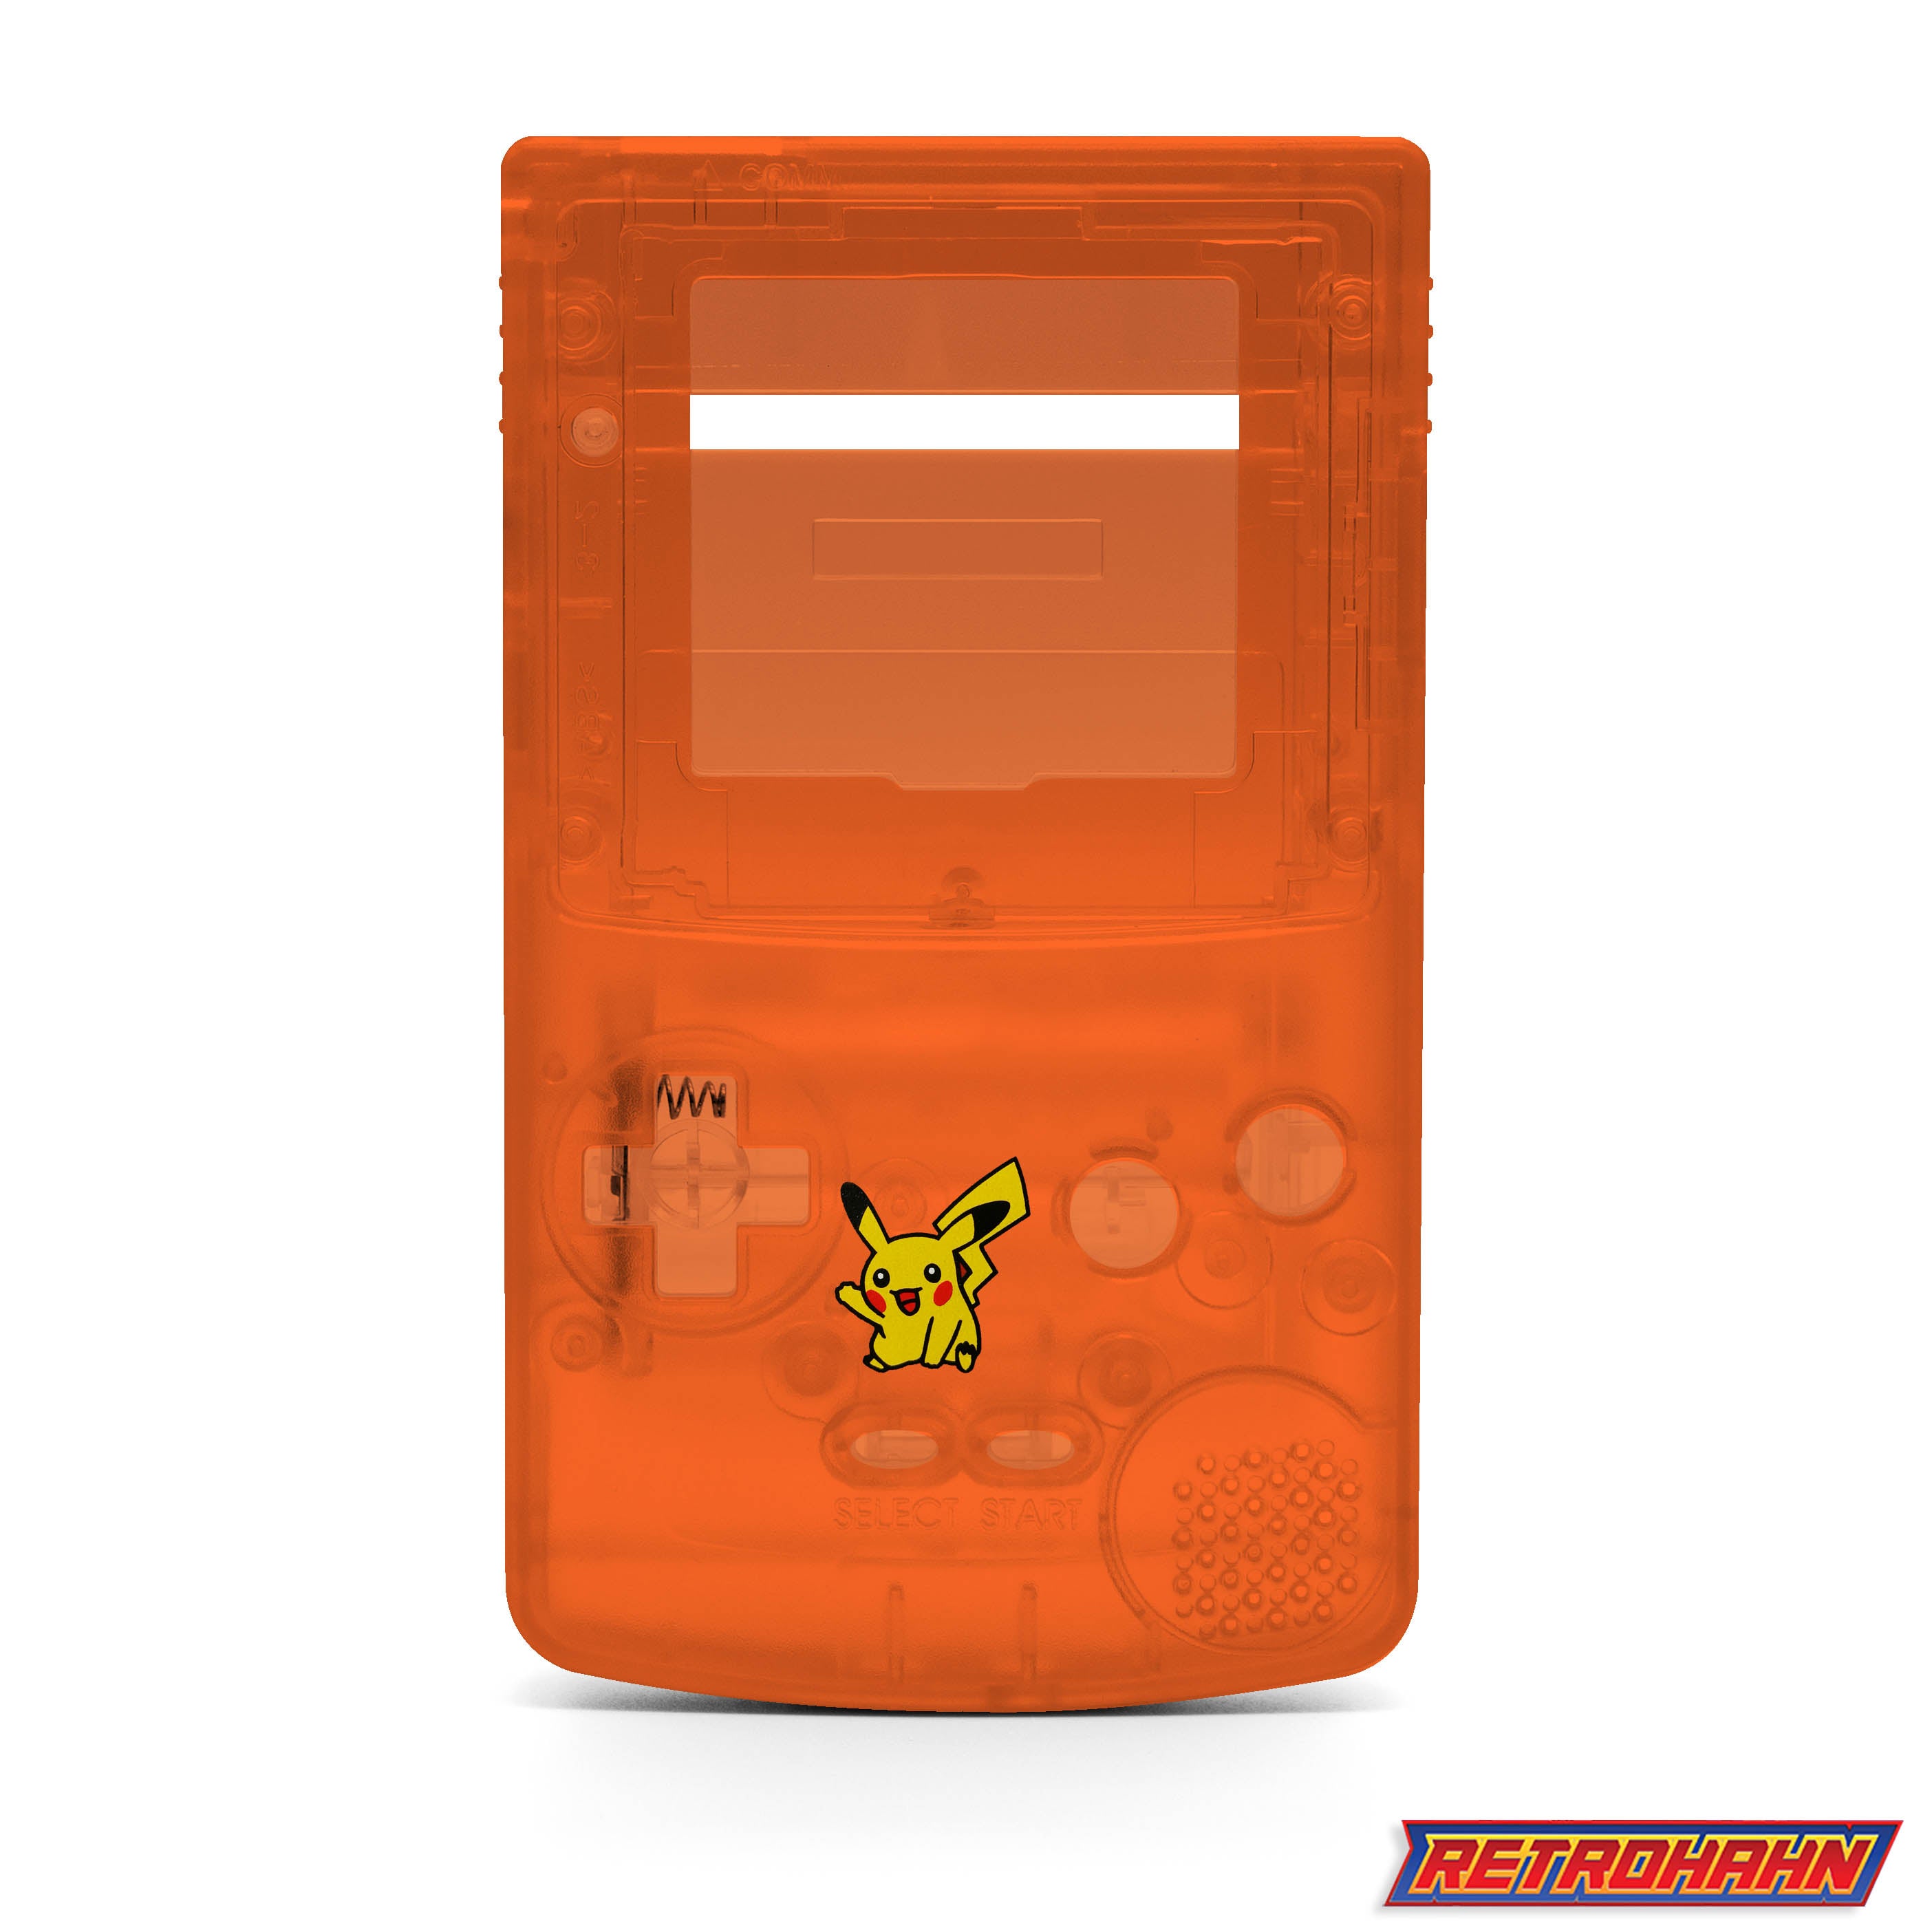 Gameboy Color: Gehäuse